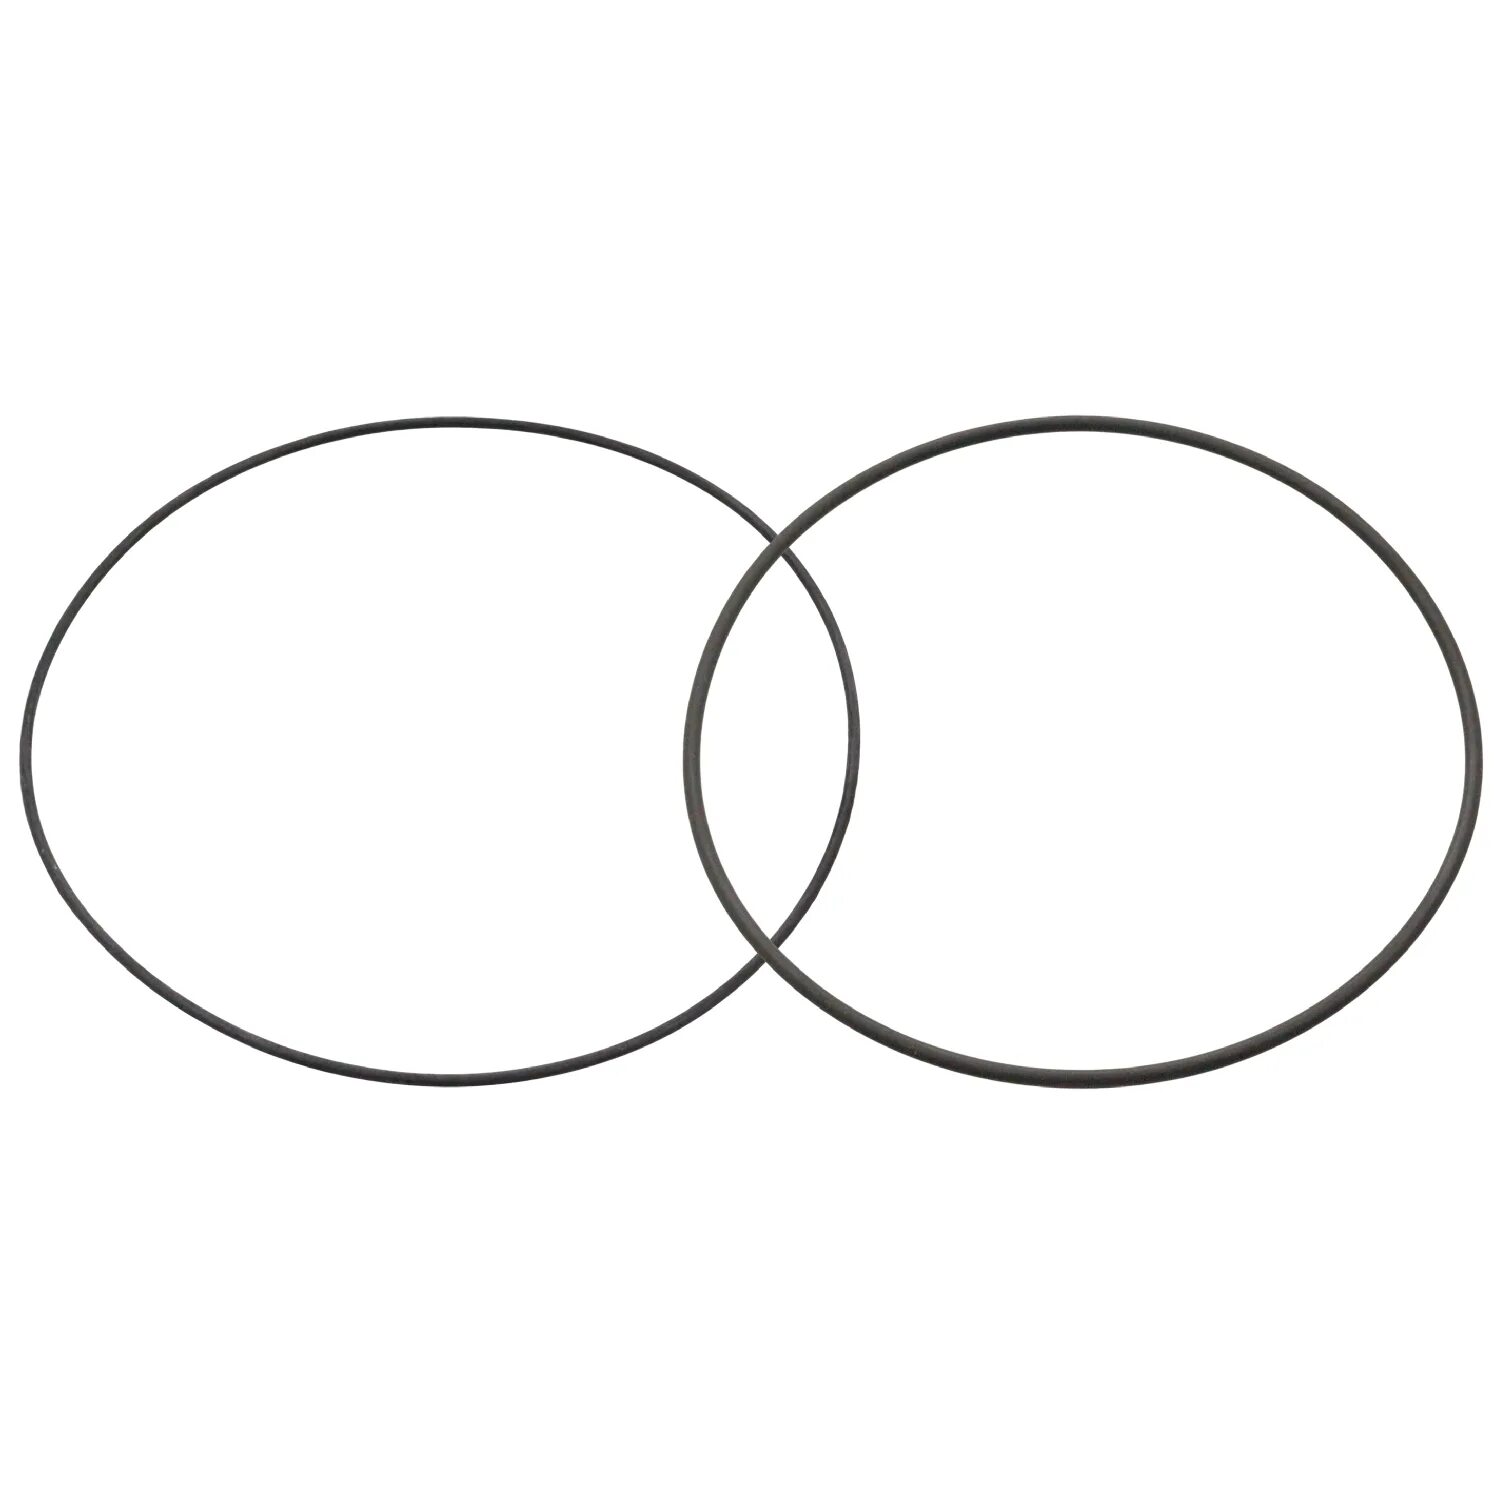 Две пересекающиеся окружности. Два пересекающихся круга. Два пересекающихся круга символ. Пересечение кругов. Знак маленького круга